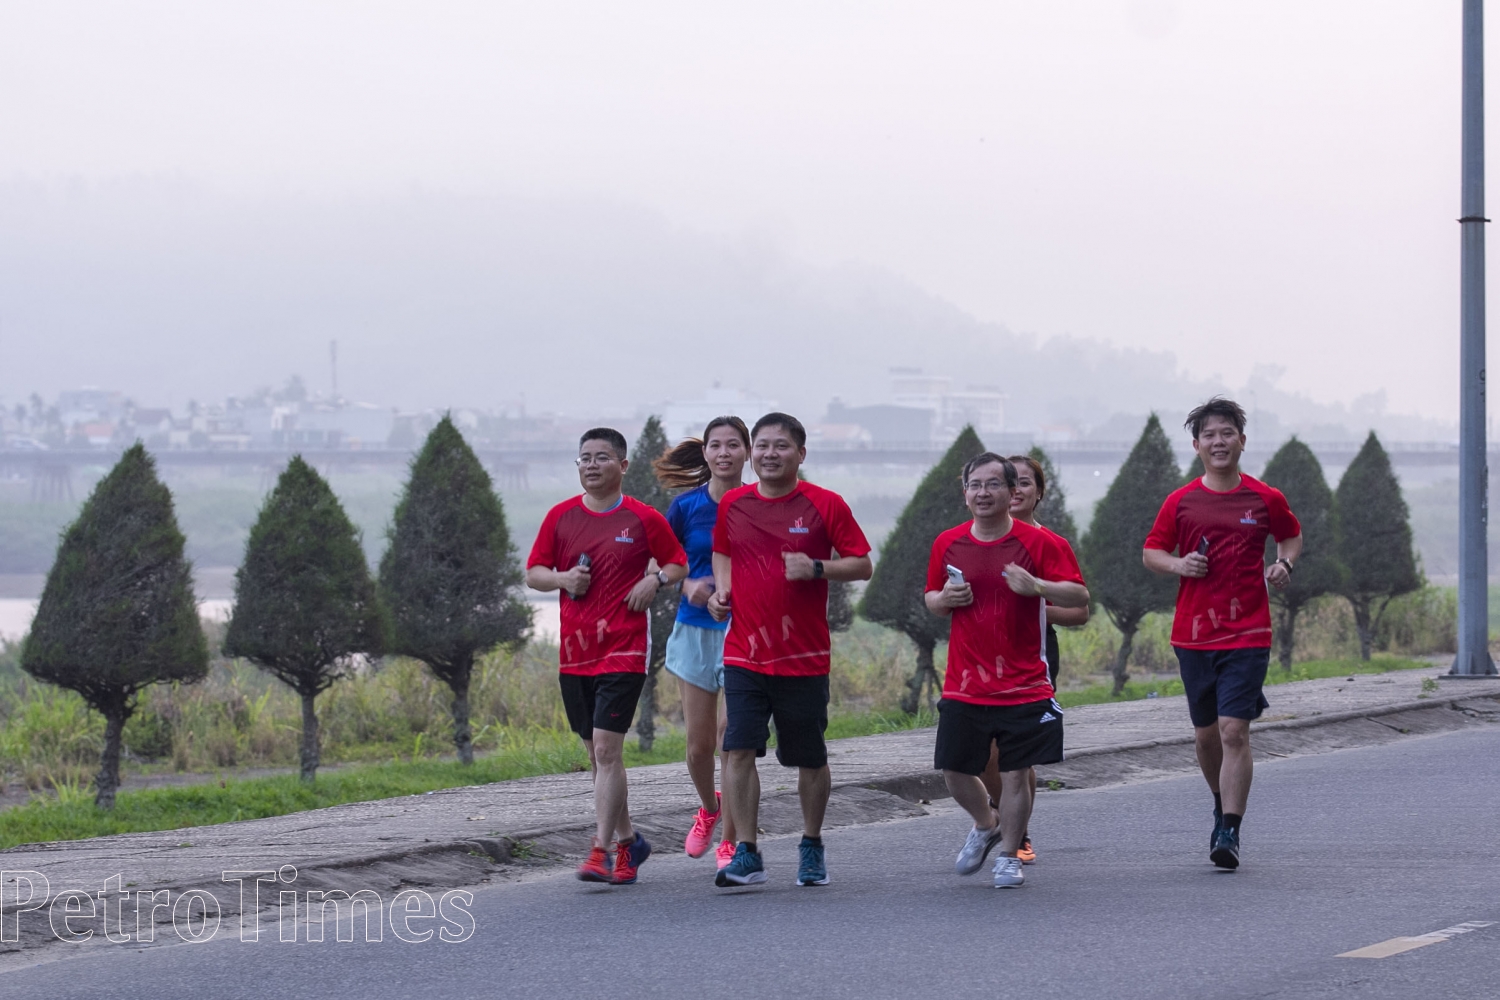 Giải chạy marathon tỉnh Quảng Ngãi, Cúp BSR năm 2023 sẽ được tổ chức vào tháng 5